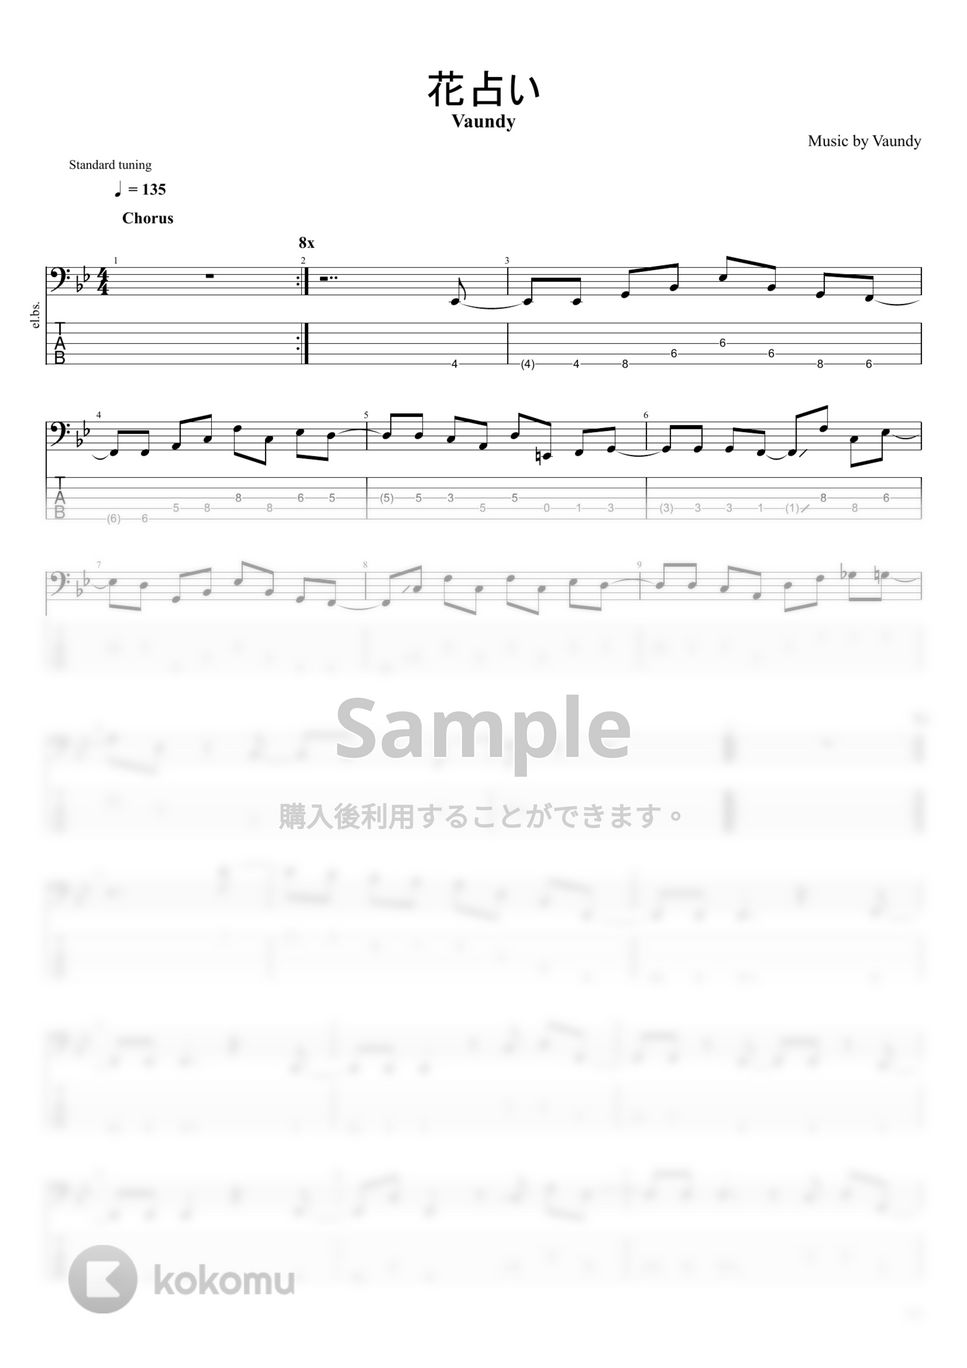 Vaundy - 花占い (5弦) by まっきん